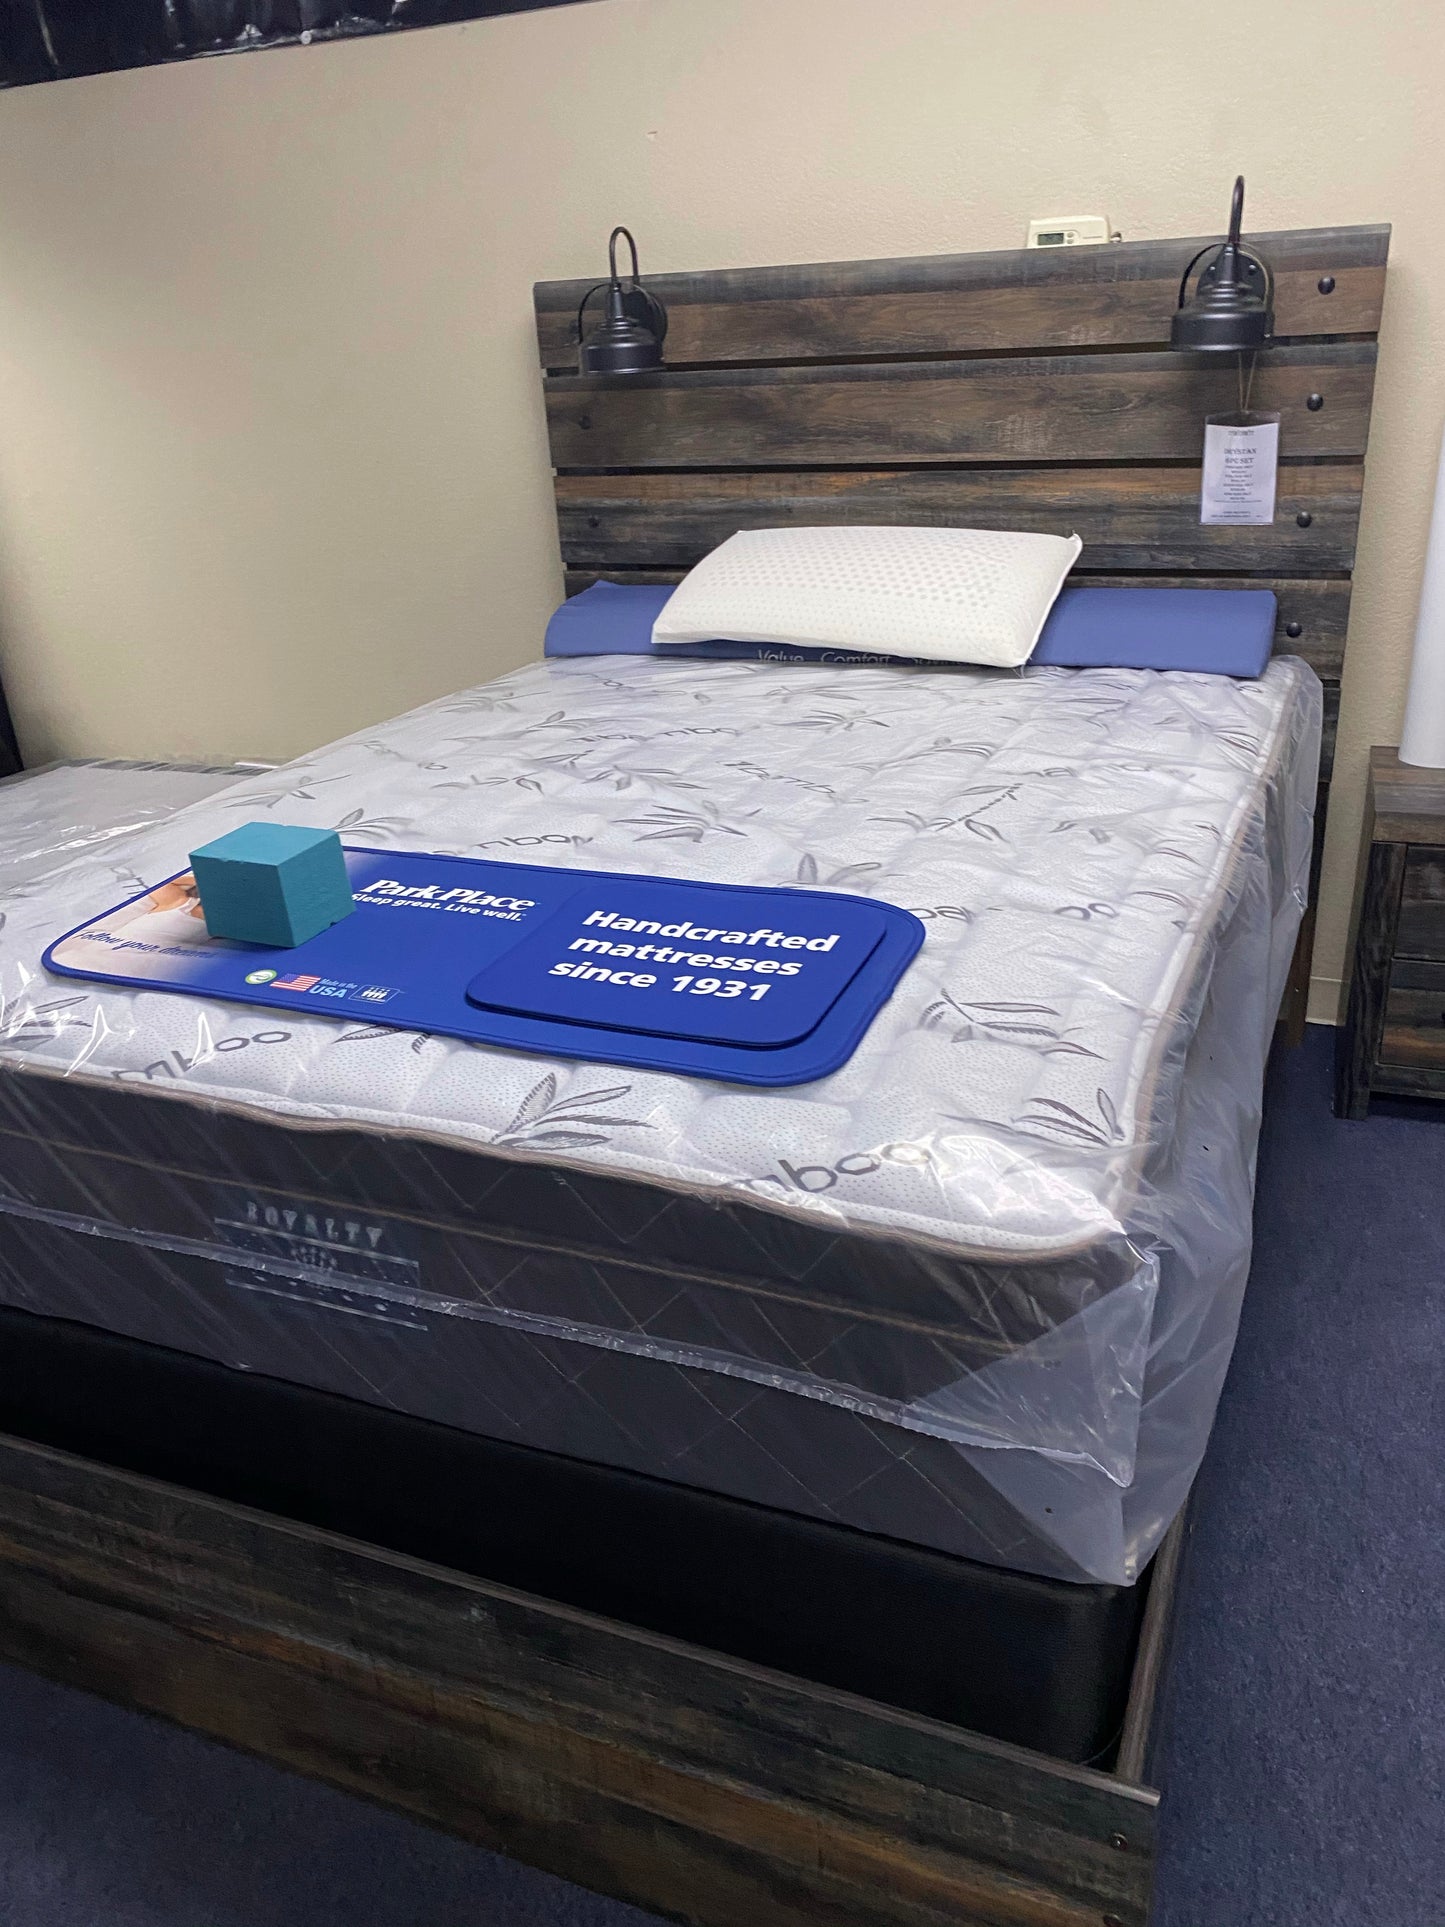 Crazy quilt 12” pillow top mattress